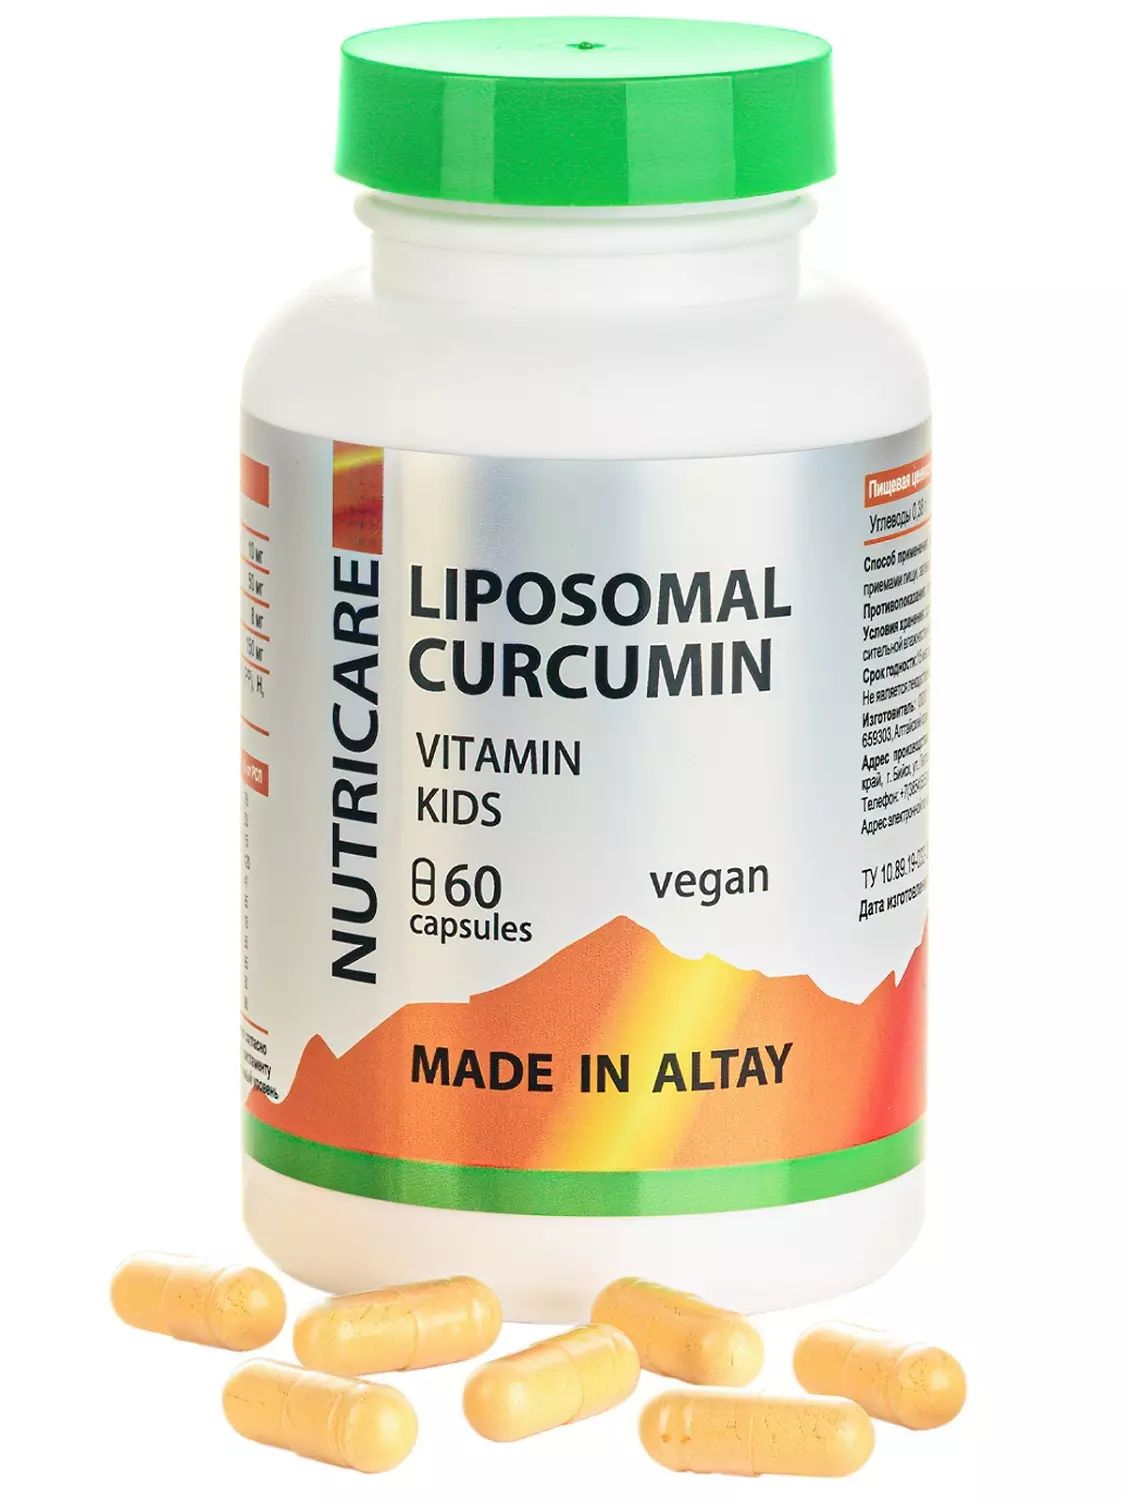 Liposomal Curcumin Витамин кидс с магнием, цинком, кальцием + 11 витаминов, веган, 60 капсул